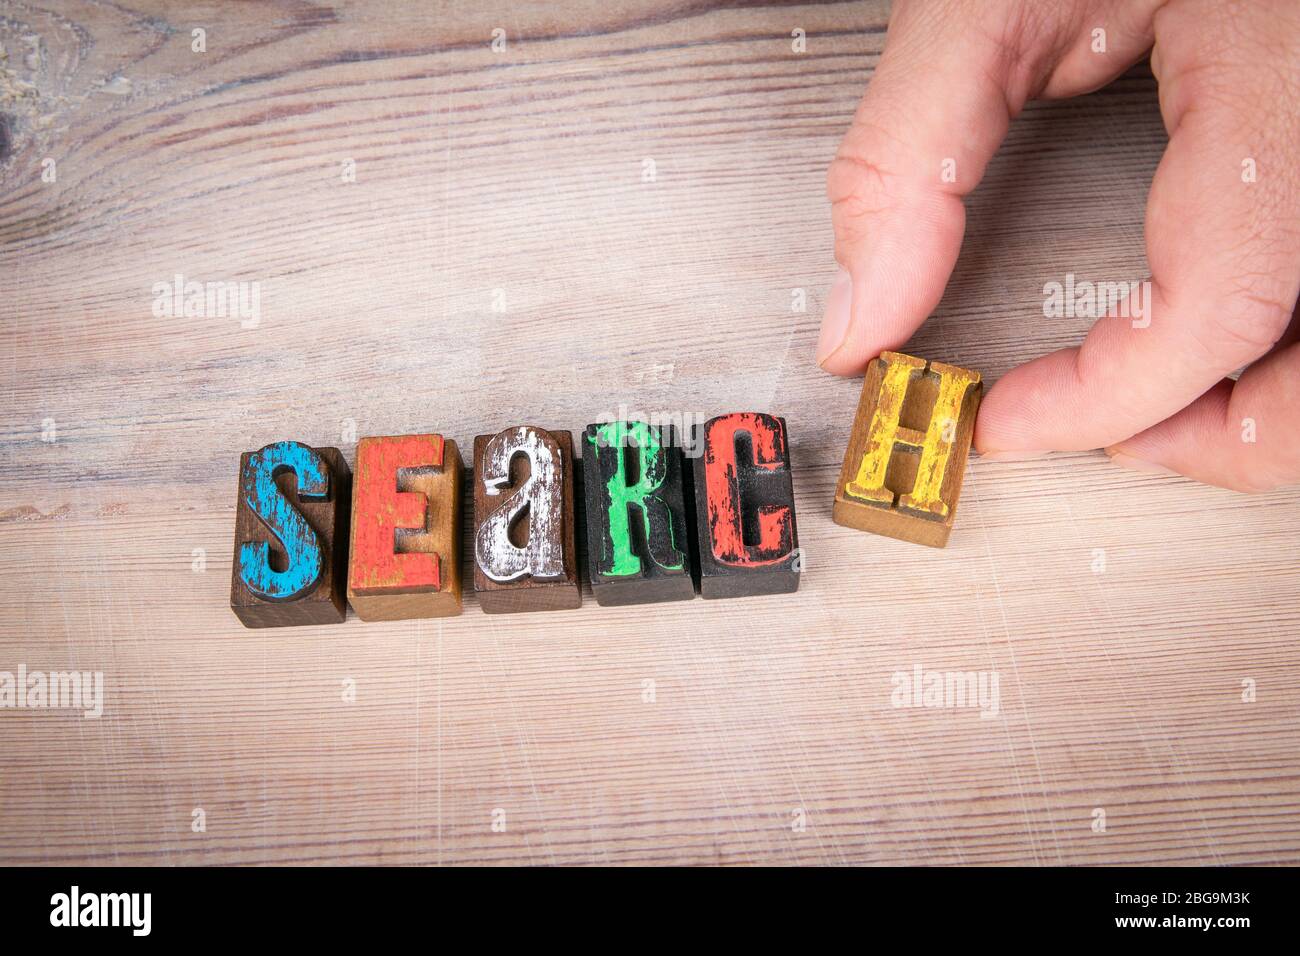 RICERCA. Internet, scienza, salute e servizio. Lettere di legno colorate su sfondo chiaro Foto Stock